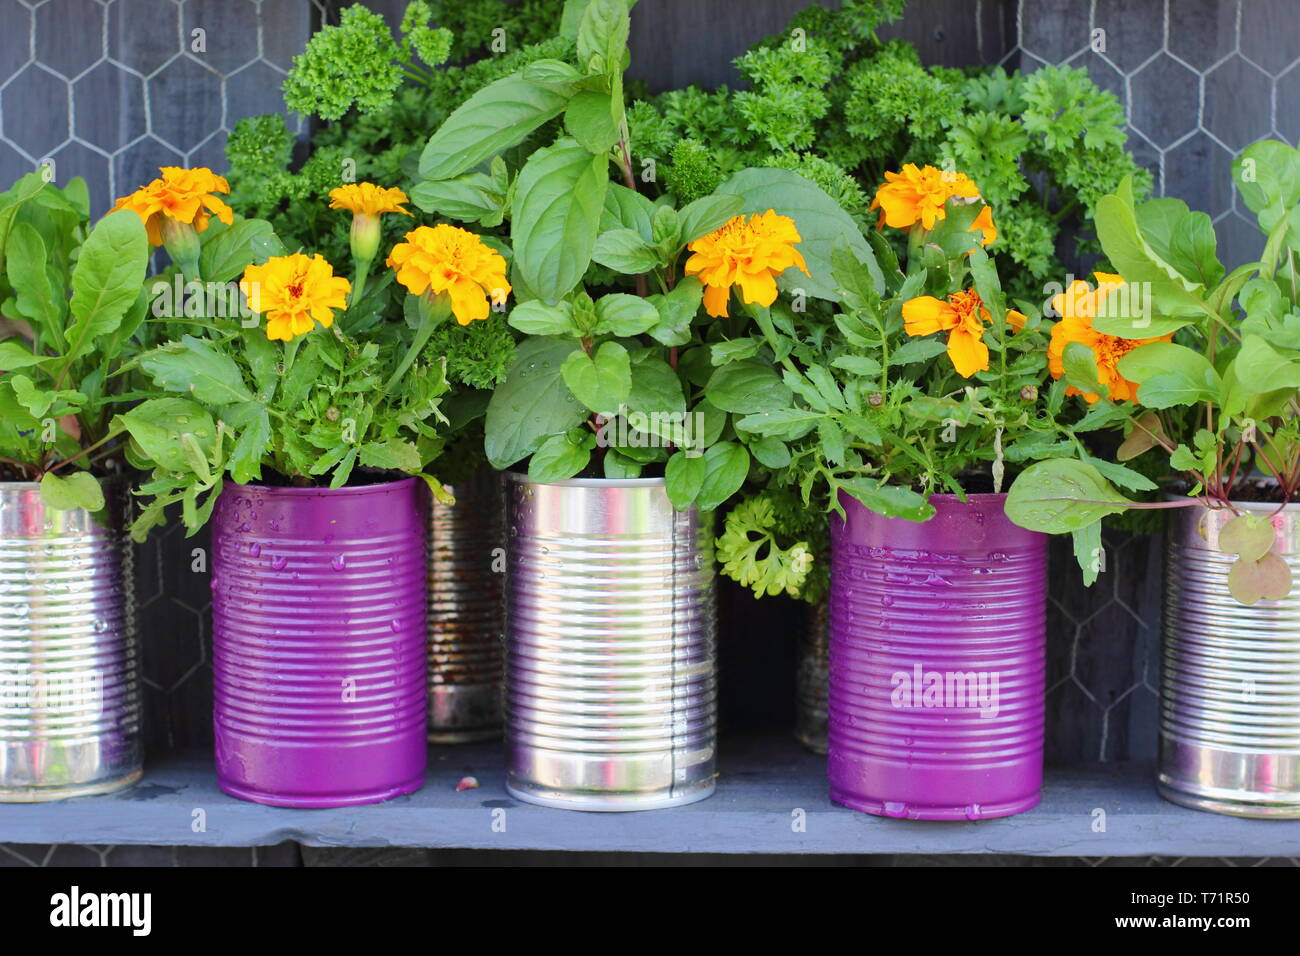 Kleiner Garten Idee. Upcycled Blechdosen in Pflanzmaschinen mit Kräutern und Ringelblumen, Großbritannien Stockfoto